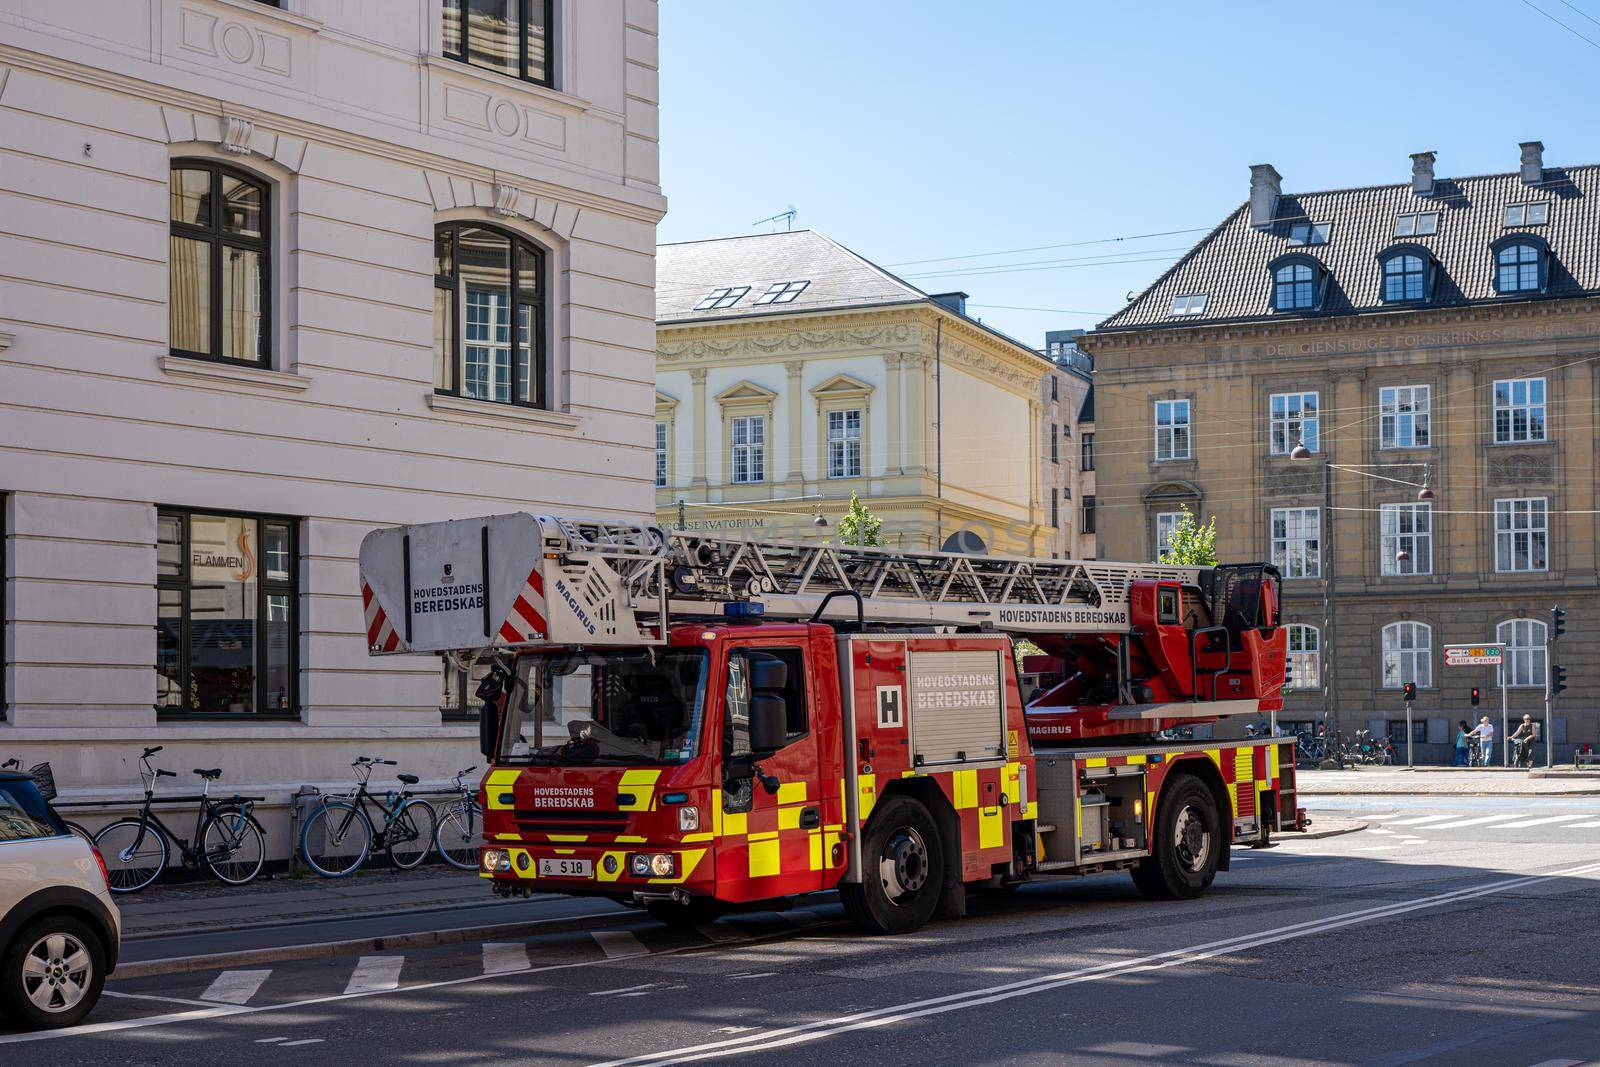 Copenhagen, Denmark - July 12, 2022: Side view of a fire truck parked in a street.